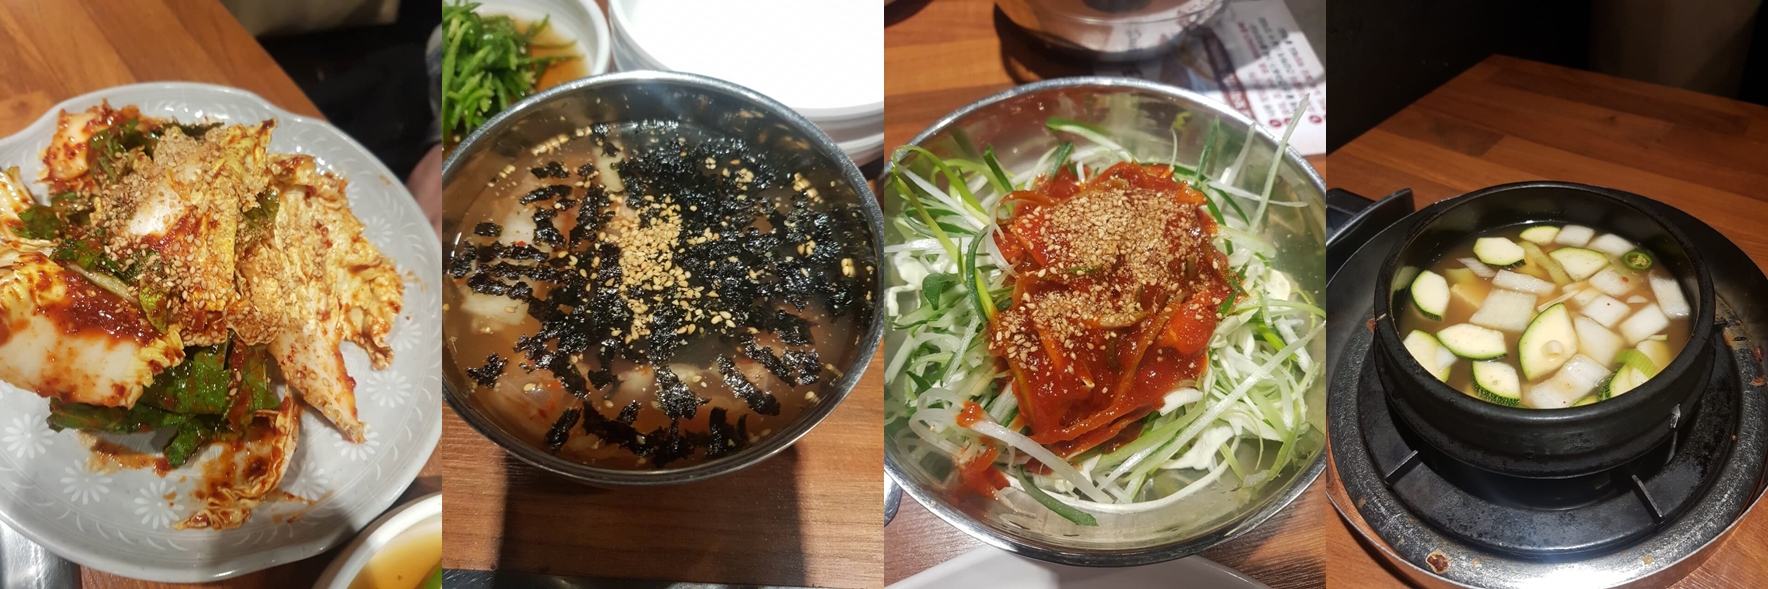 강동구 천호 맛집 한마음 정육식당 리뷰 삽겹살 소고기 맛집